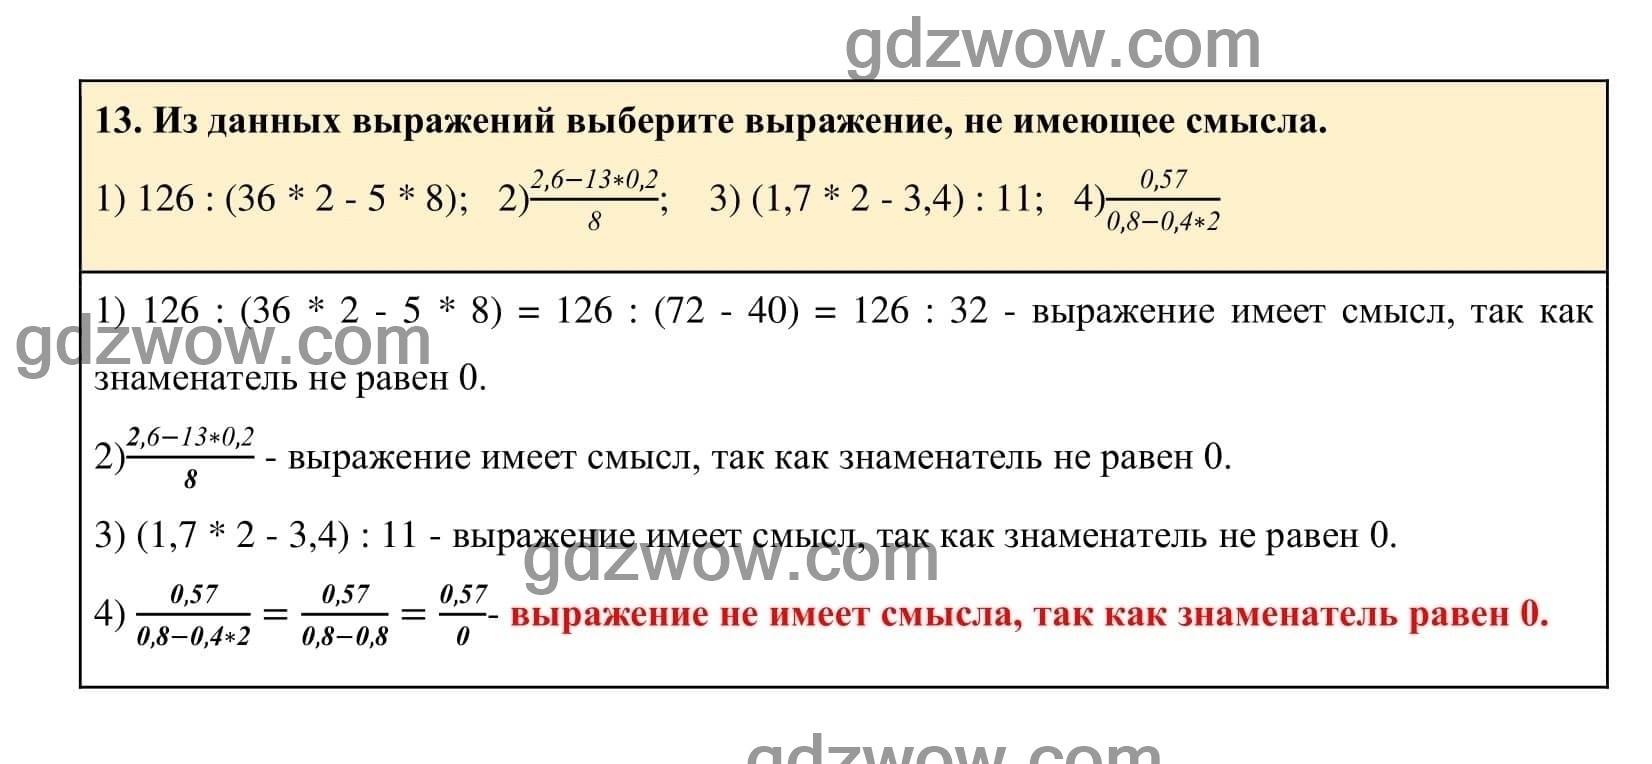 Упражнение 13 - ГДЗ по Алгебре 7 класс Учебник Макарычев (решебник) - GDZwow